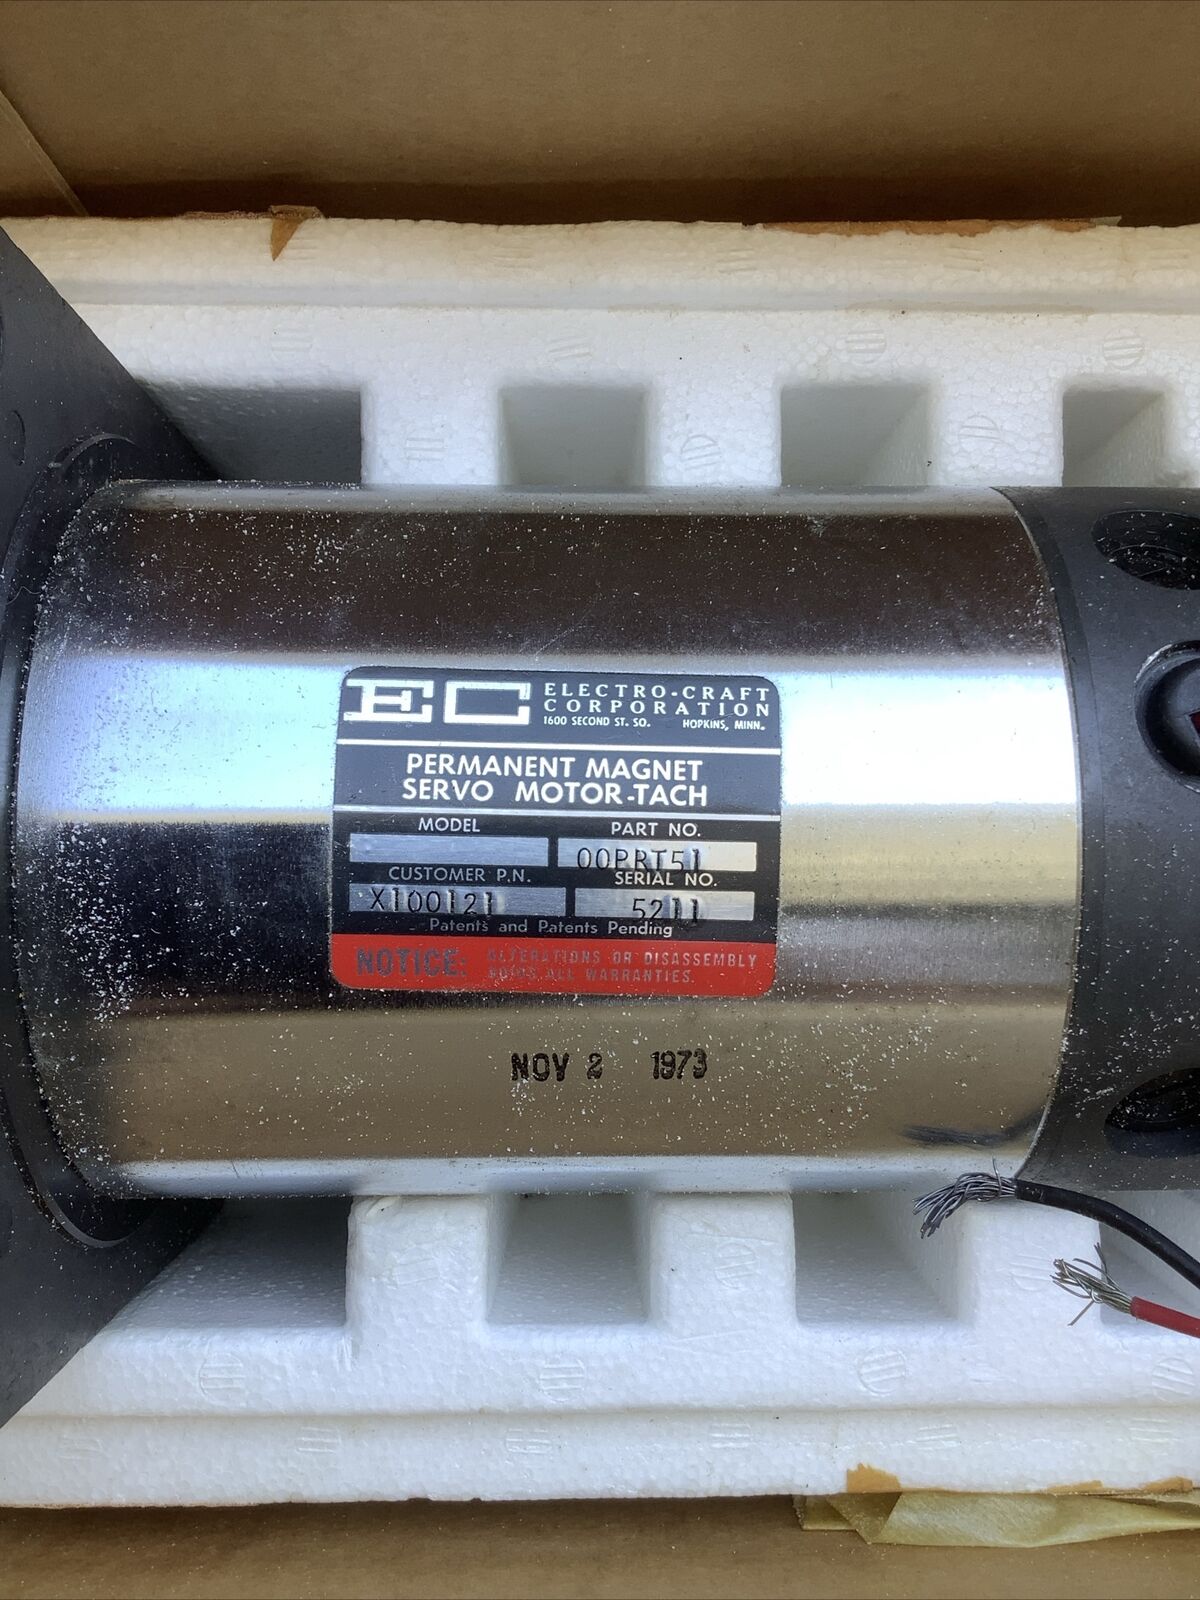 EC Electro-Craft Permanent Magnet Servo Motor. Part No 00PRT51